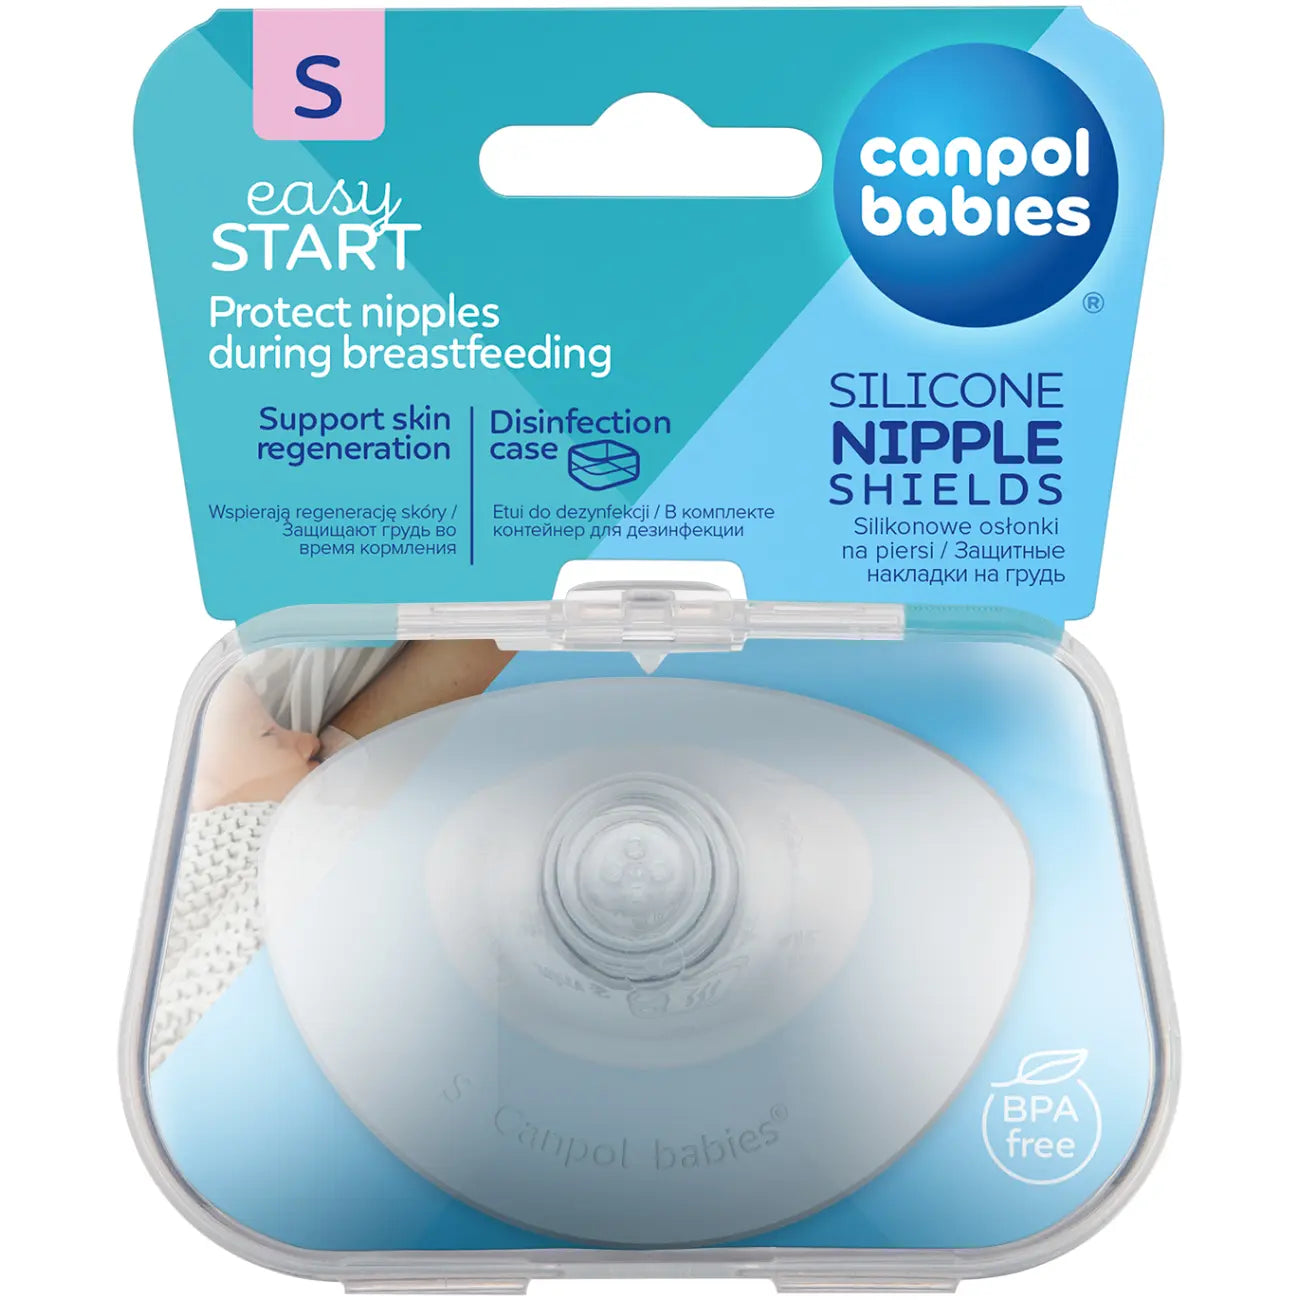 Canpol Babies: EasyStart S silikone brystskjolde 2 stk.